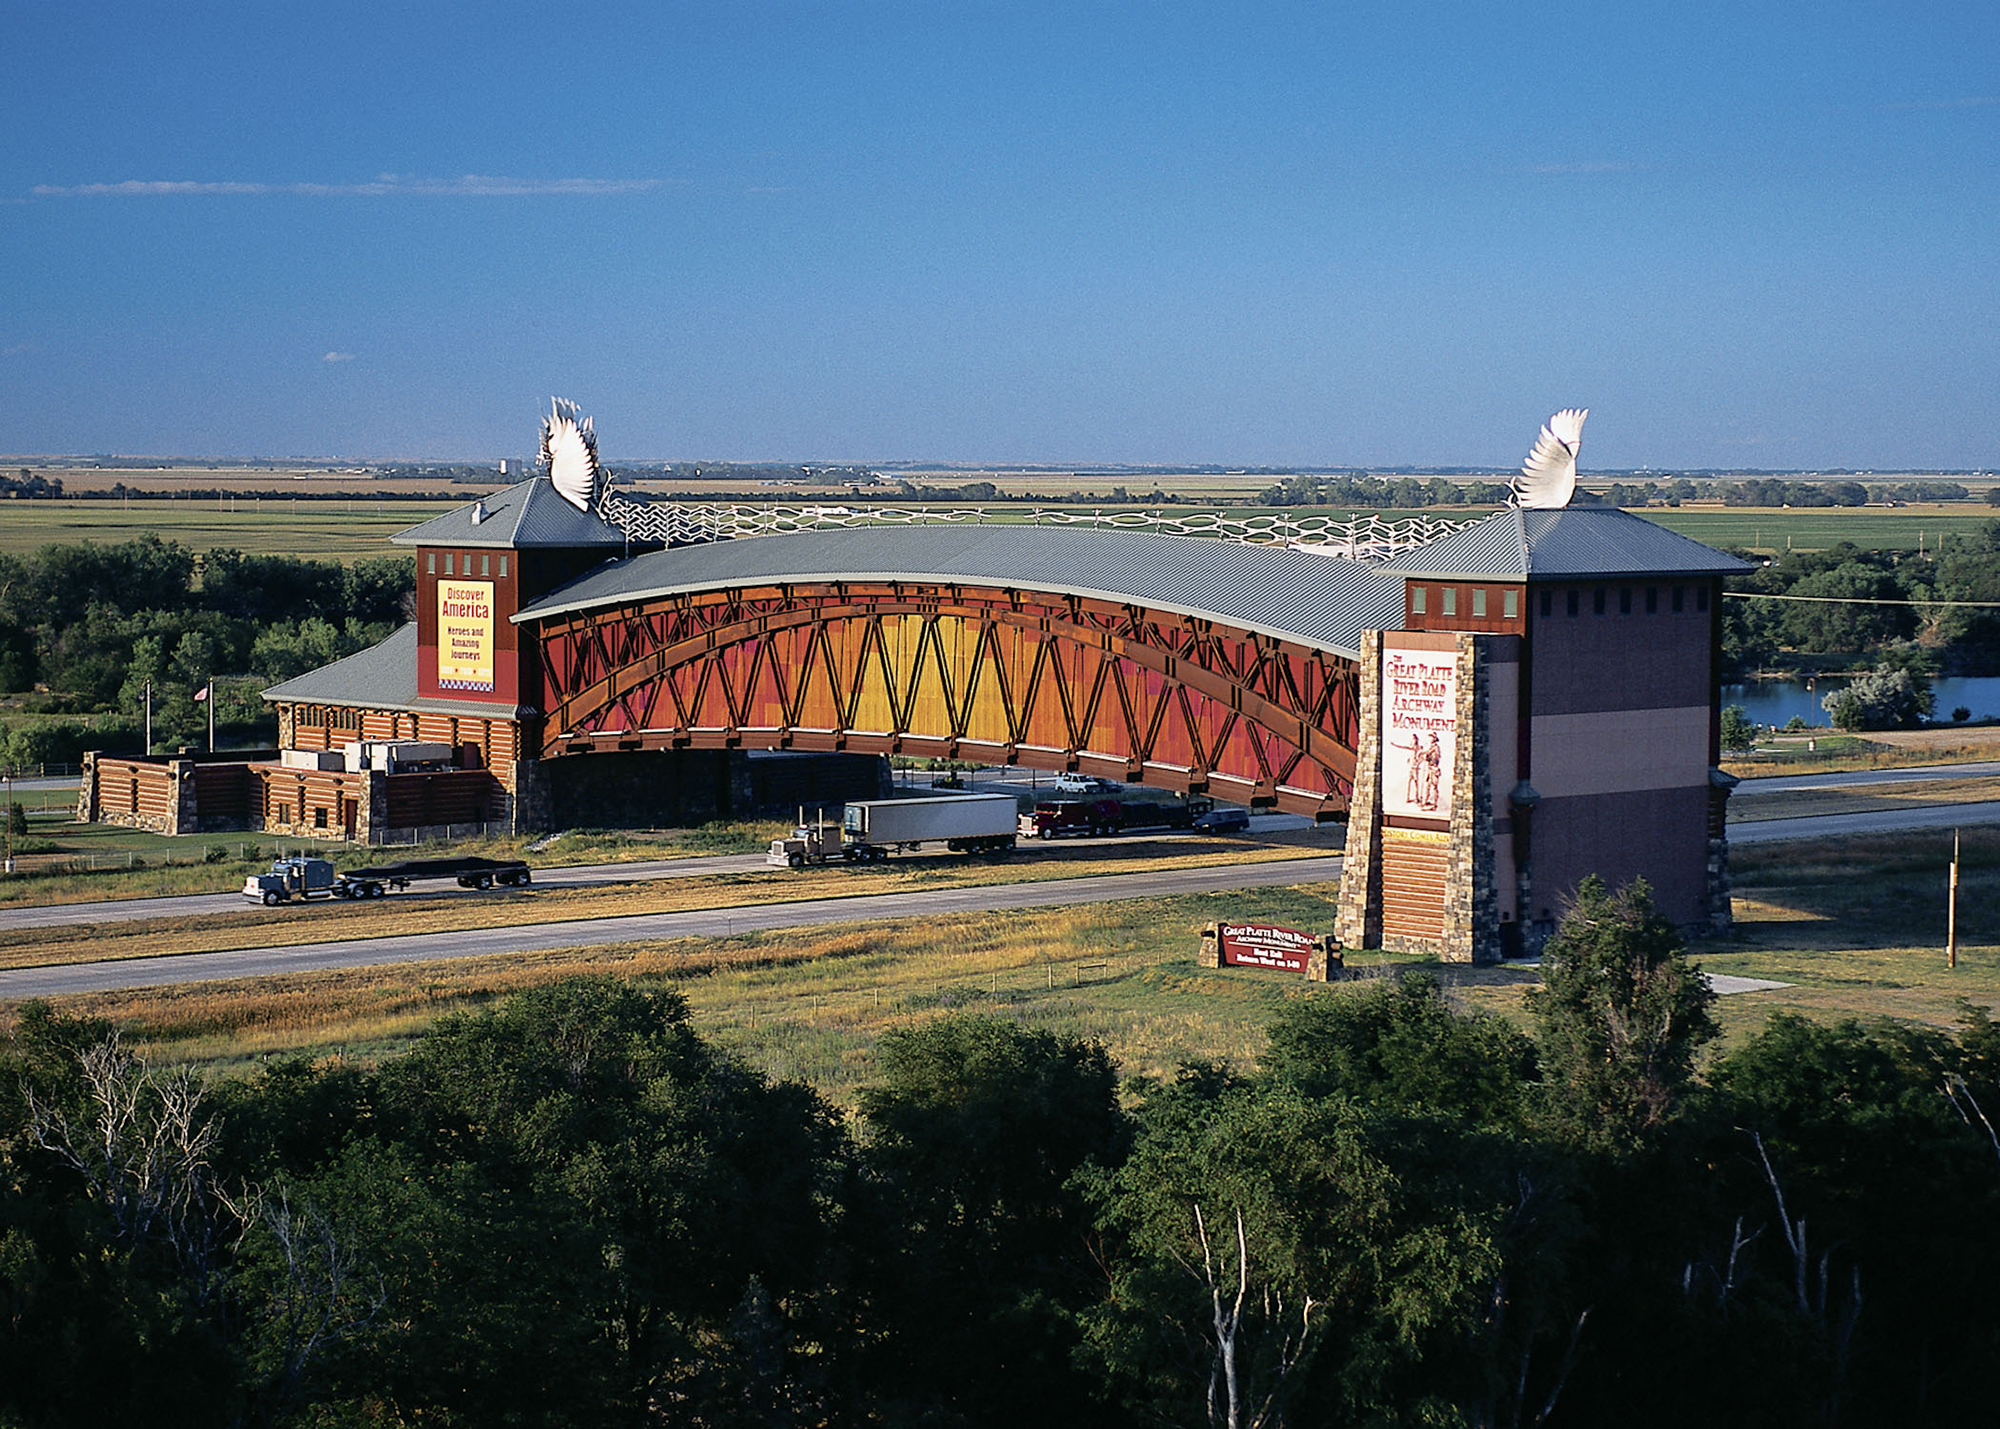 The Archway in Kearney, Nebraska